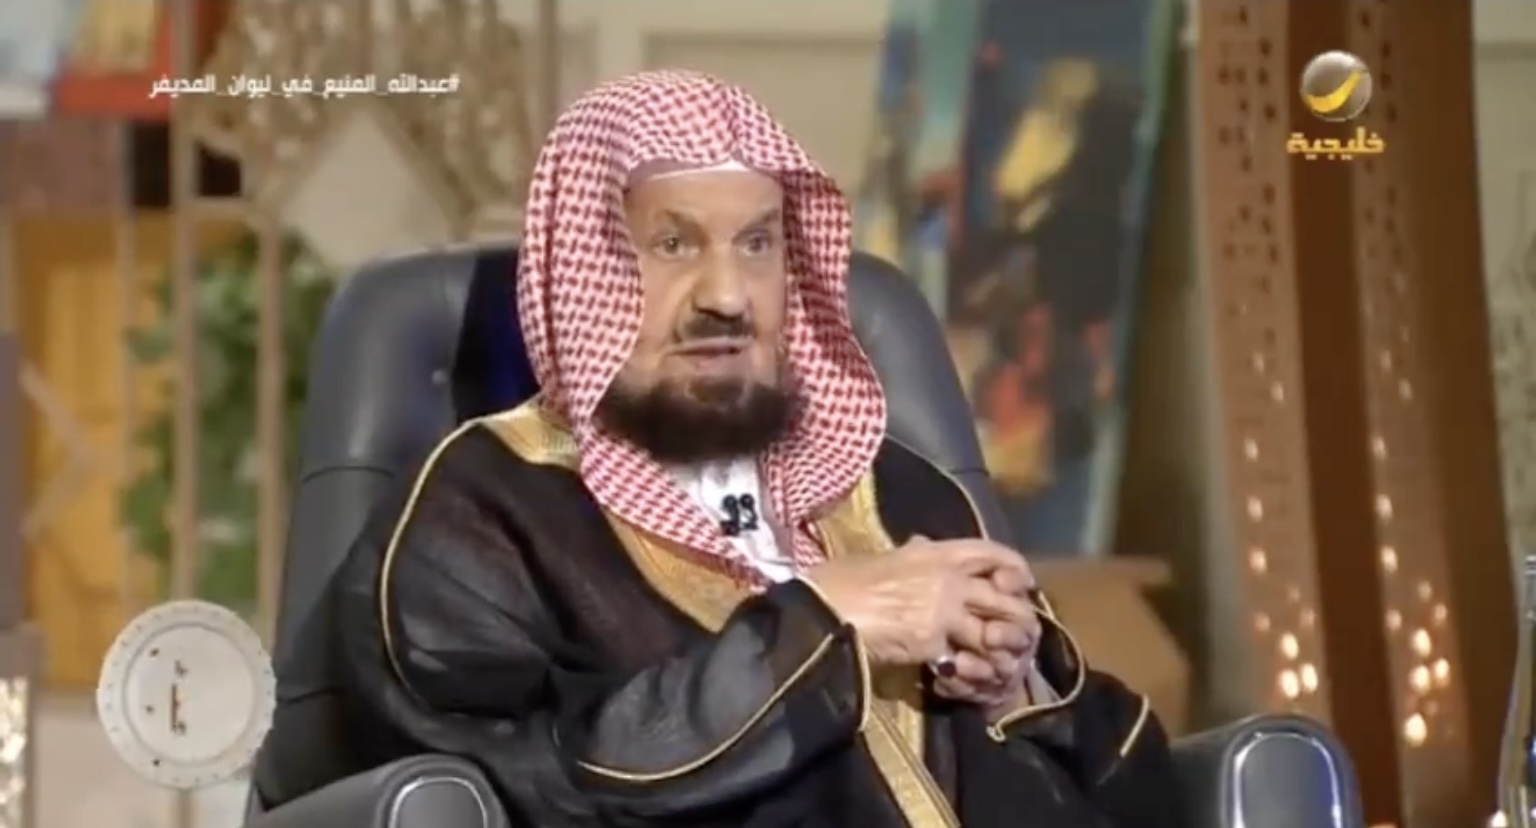 الشيخ المنيع: نقضنا حكمًا لصالح الملك فهد وأصدرنا آخر ضد الملك عبدالله